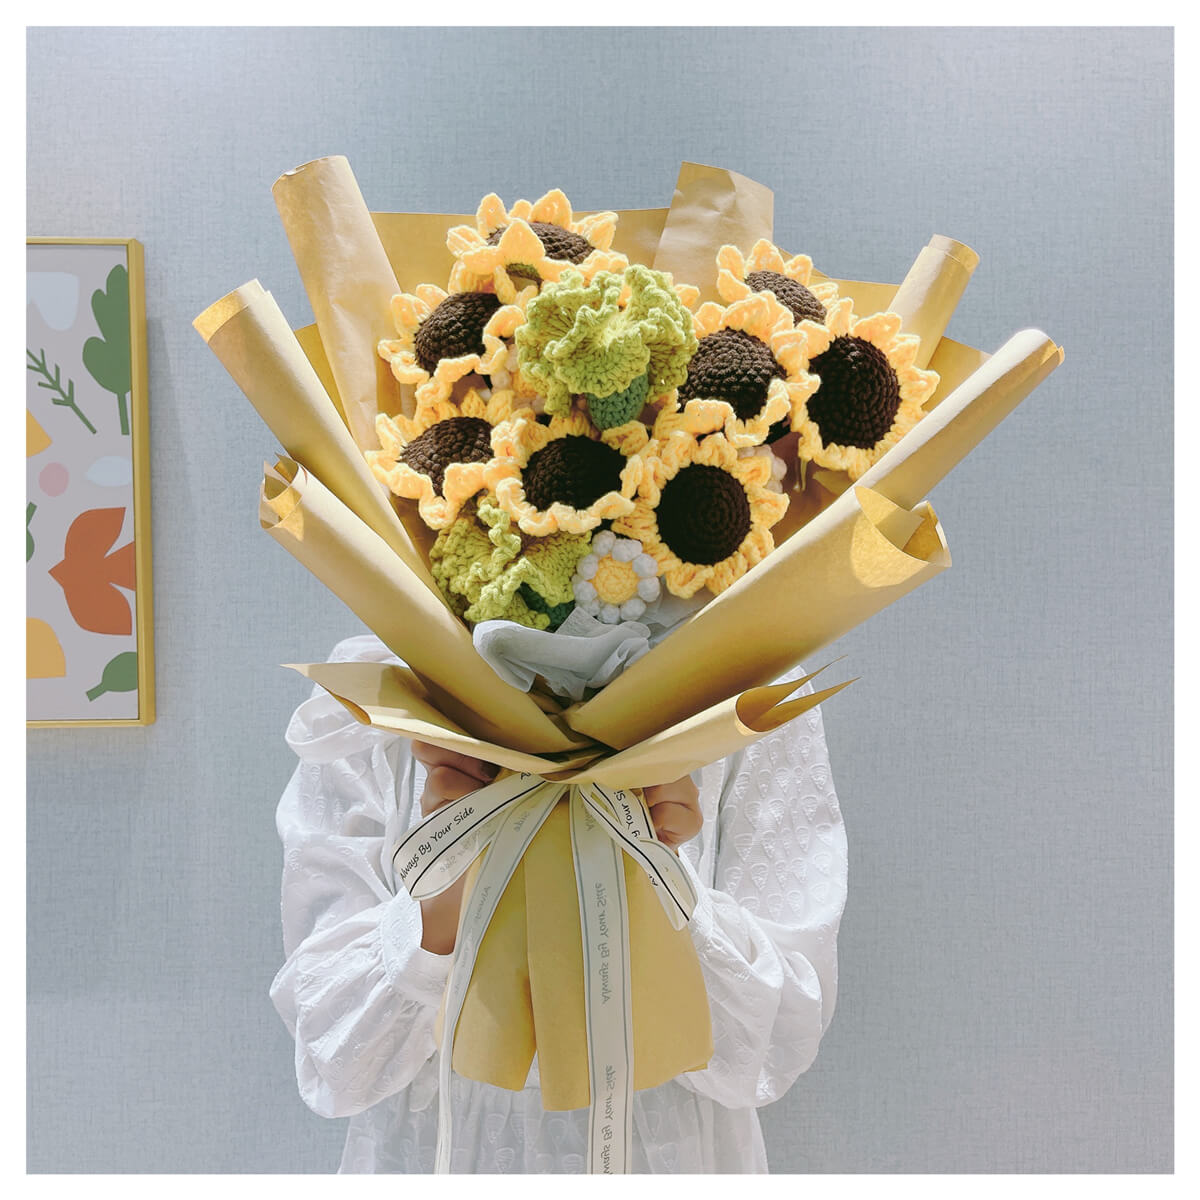 Crochet Bouquet of Sunflowers | Crochet Sunflowers